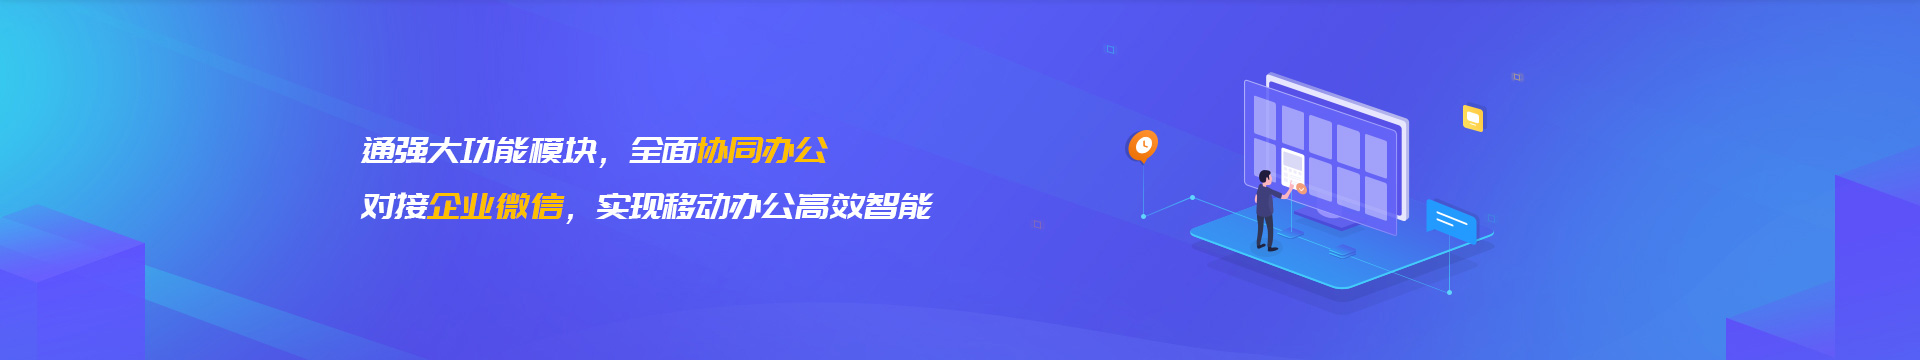 玉树藏族企业微信开发